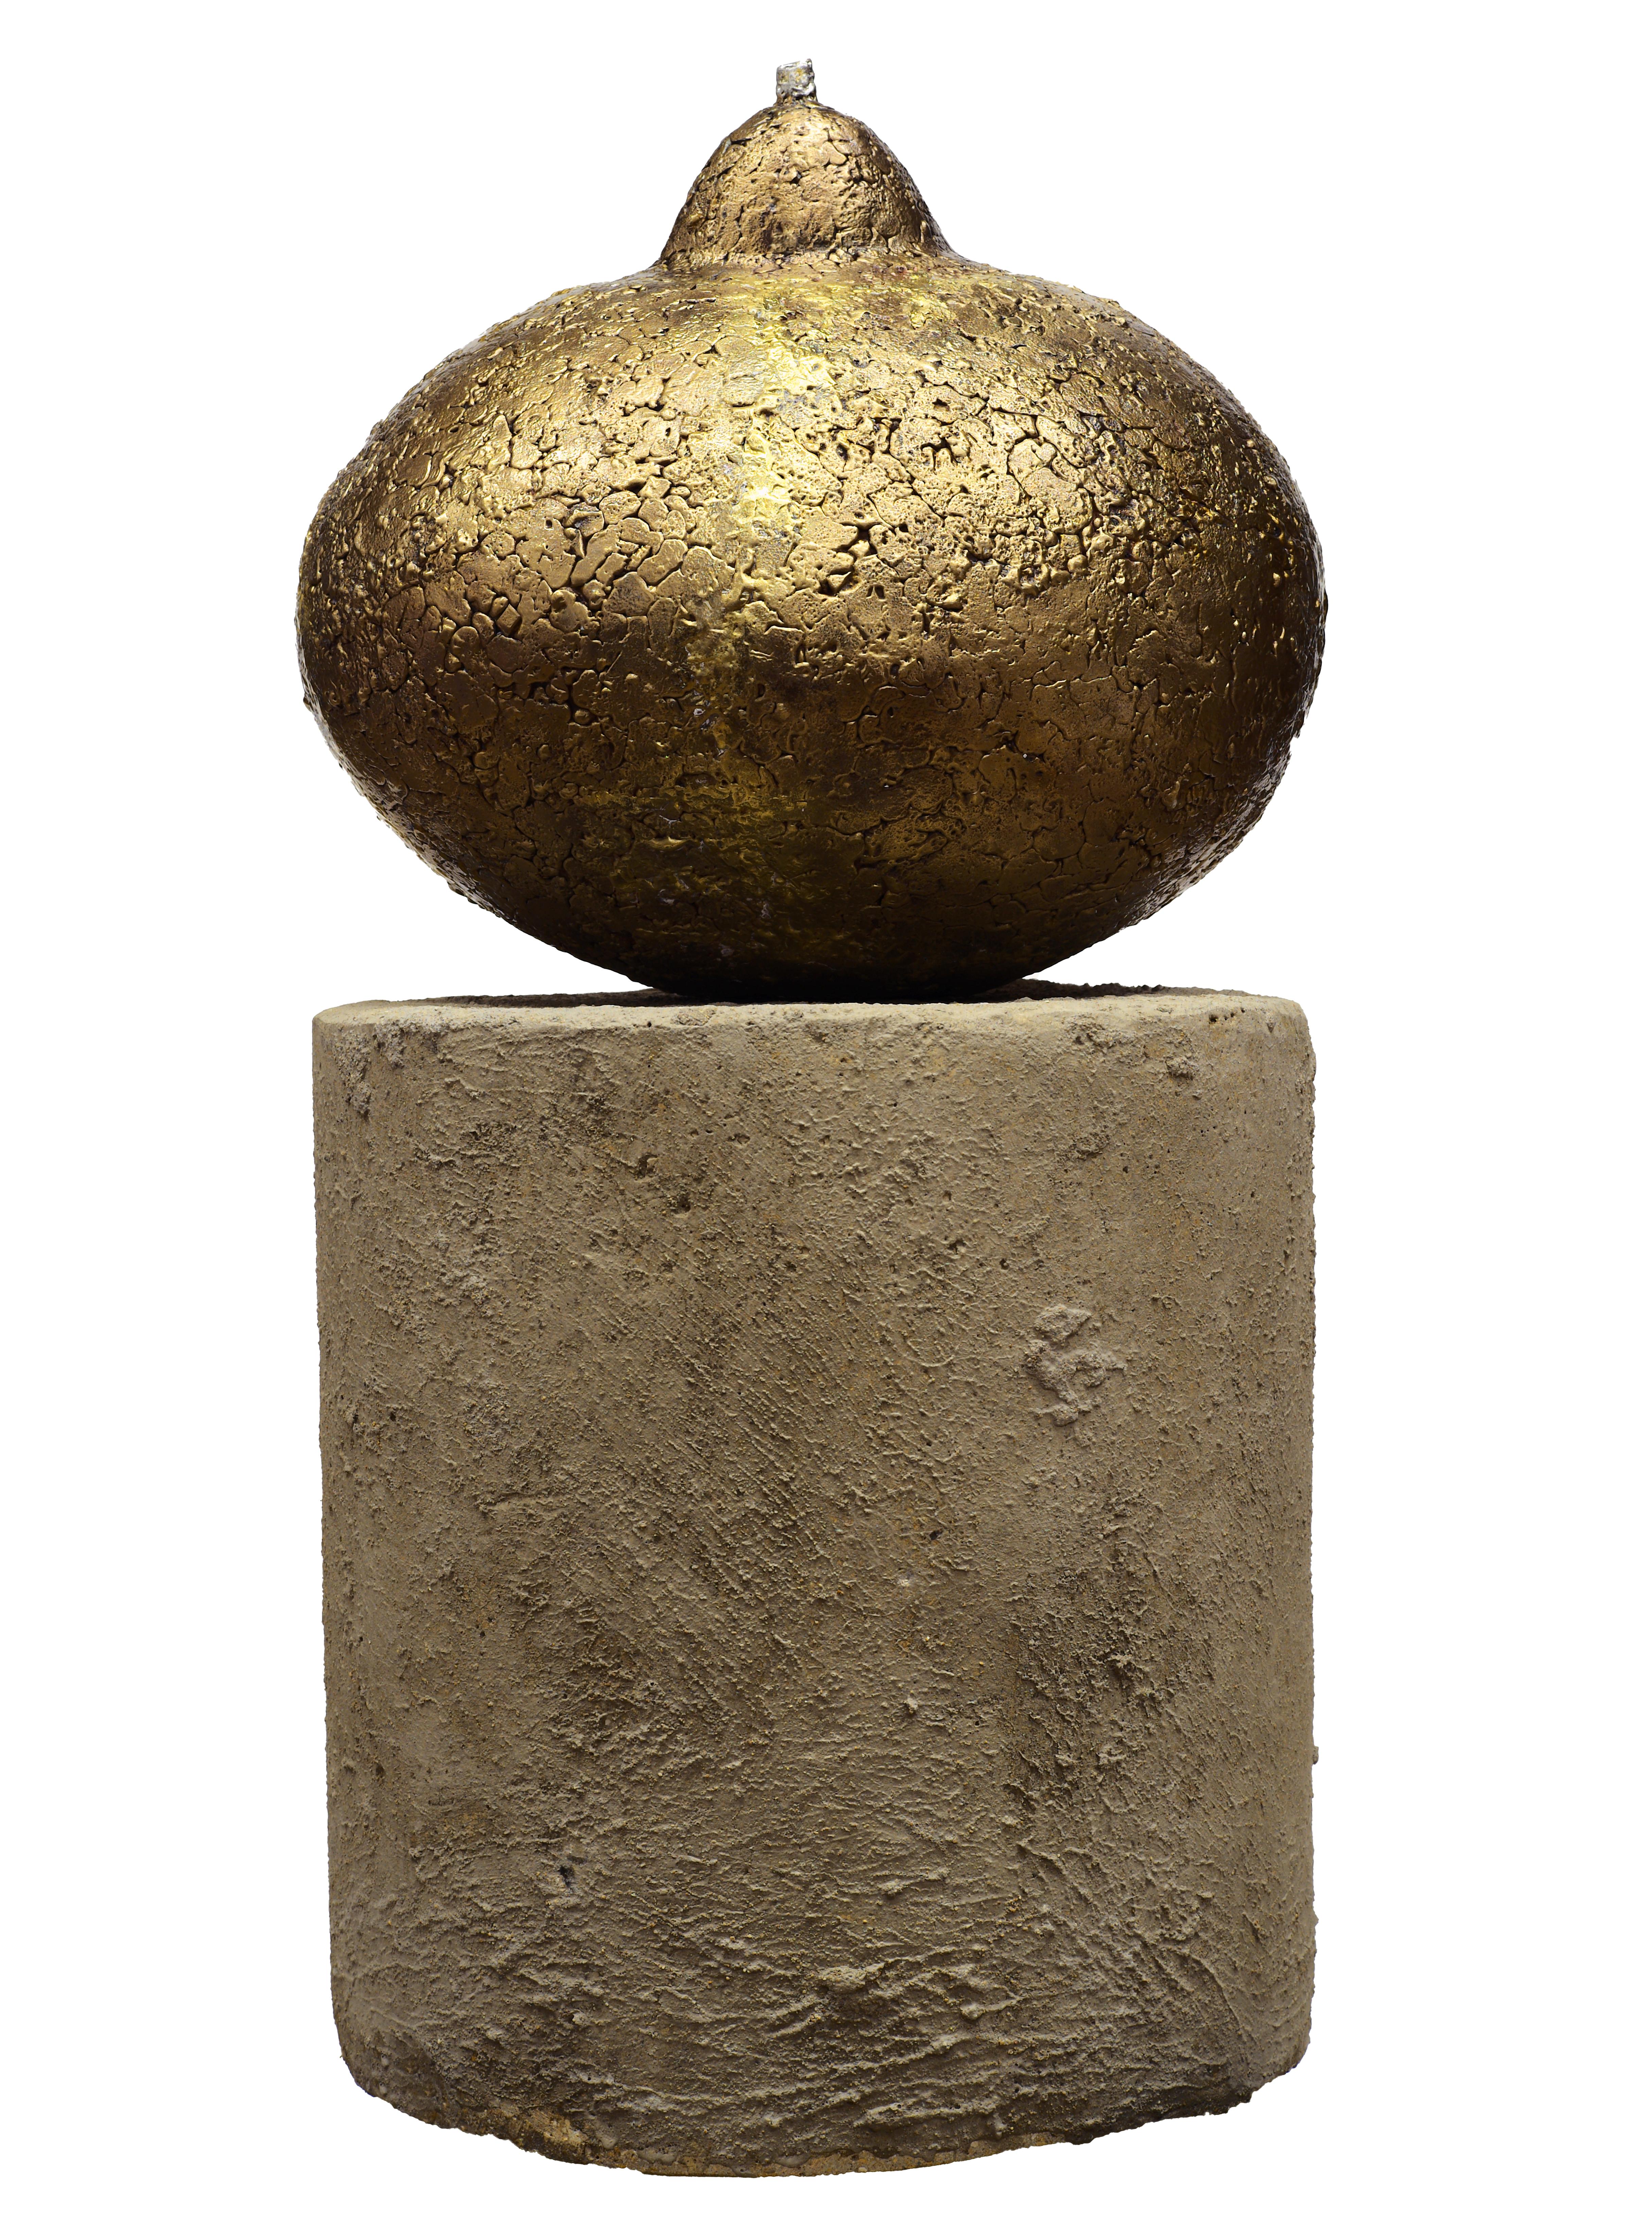 Une poire en bronze surdimensionnée repose sur une base circulaire en béton dans l'œuvre unique de Mary Block intitulée Summer Pear. Cette sculpture en bronze unique en son genre est parfaite dans sa forme imparfaite, comme seule la nature peut en